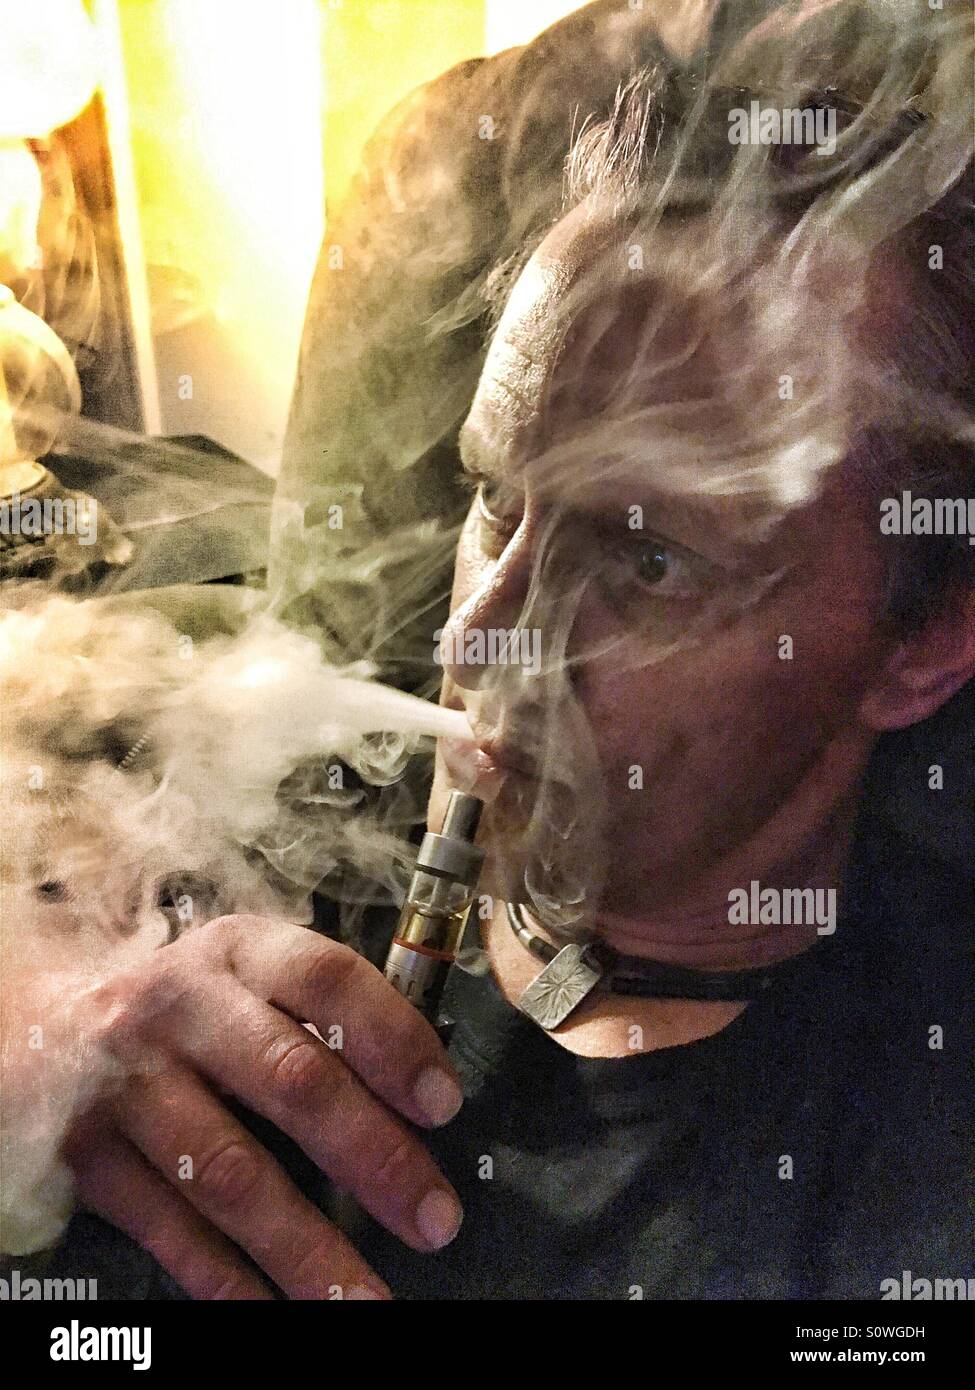 L'homme à l'aide de e-cig que quelques bouffées de vapeur de fumée Banque D'Images